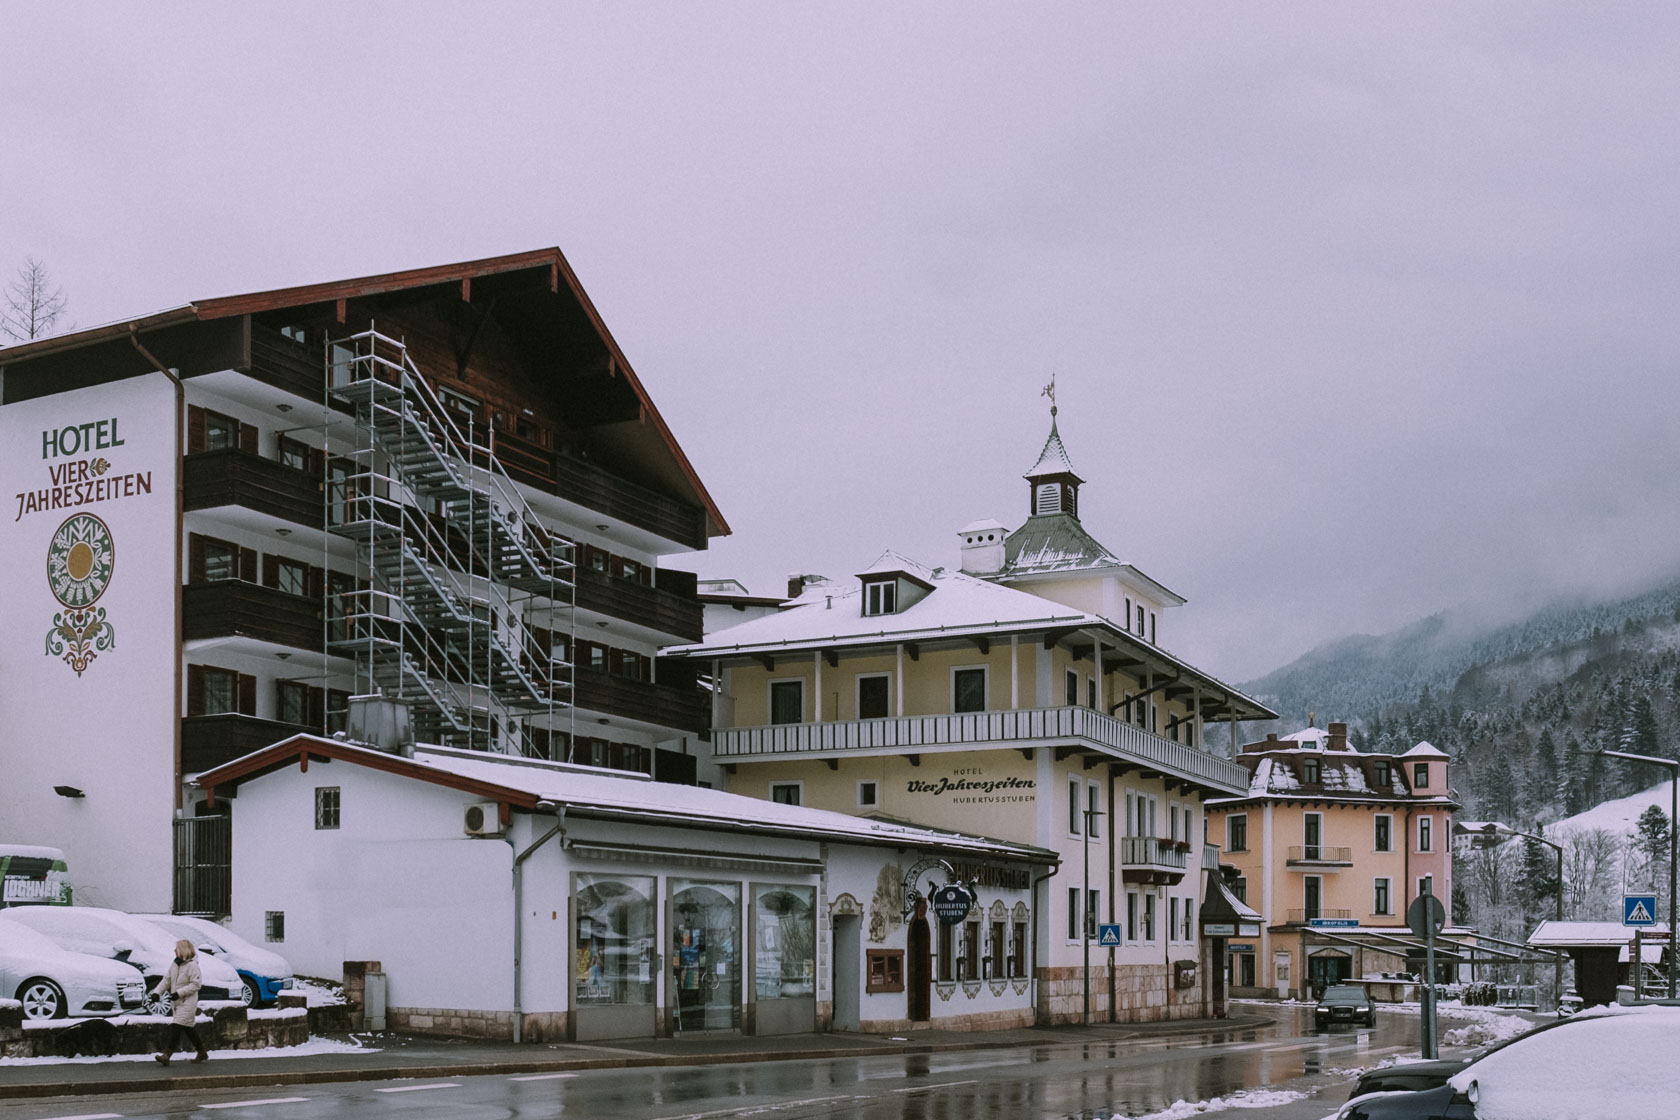 Hotel Vier Jahreszeiten in Berchtesgaden